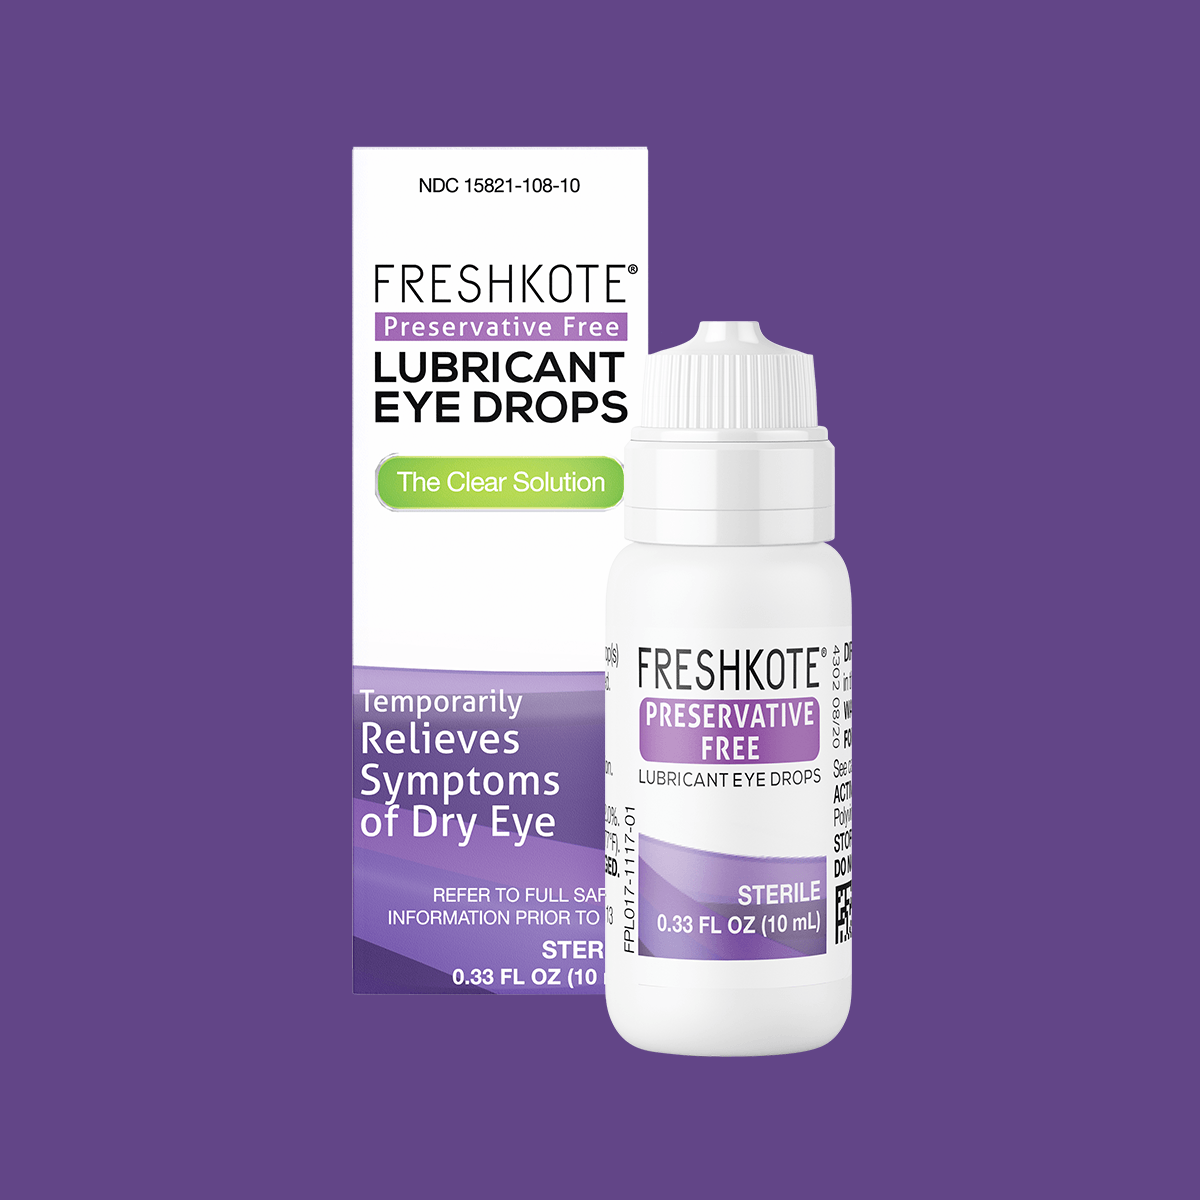 Freshkote (PF) Preservative Free Eye Drops (Multidose Bottle) - DryEye Rescue Store